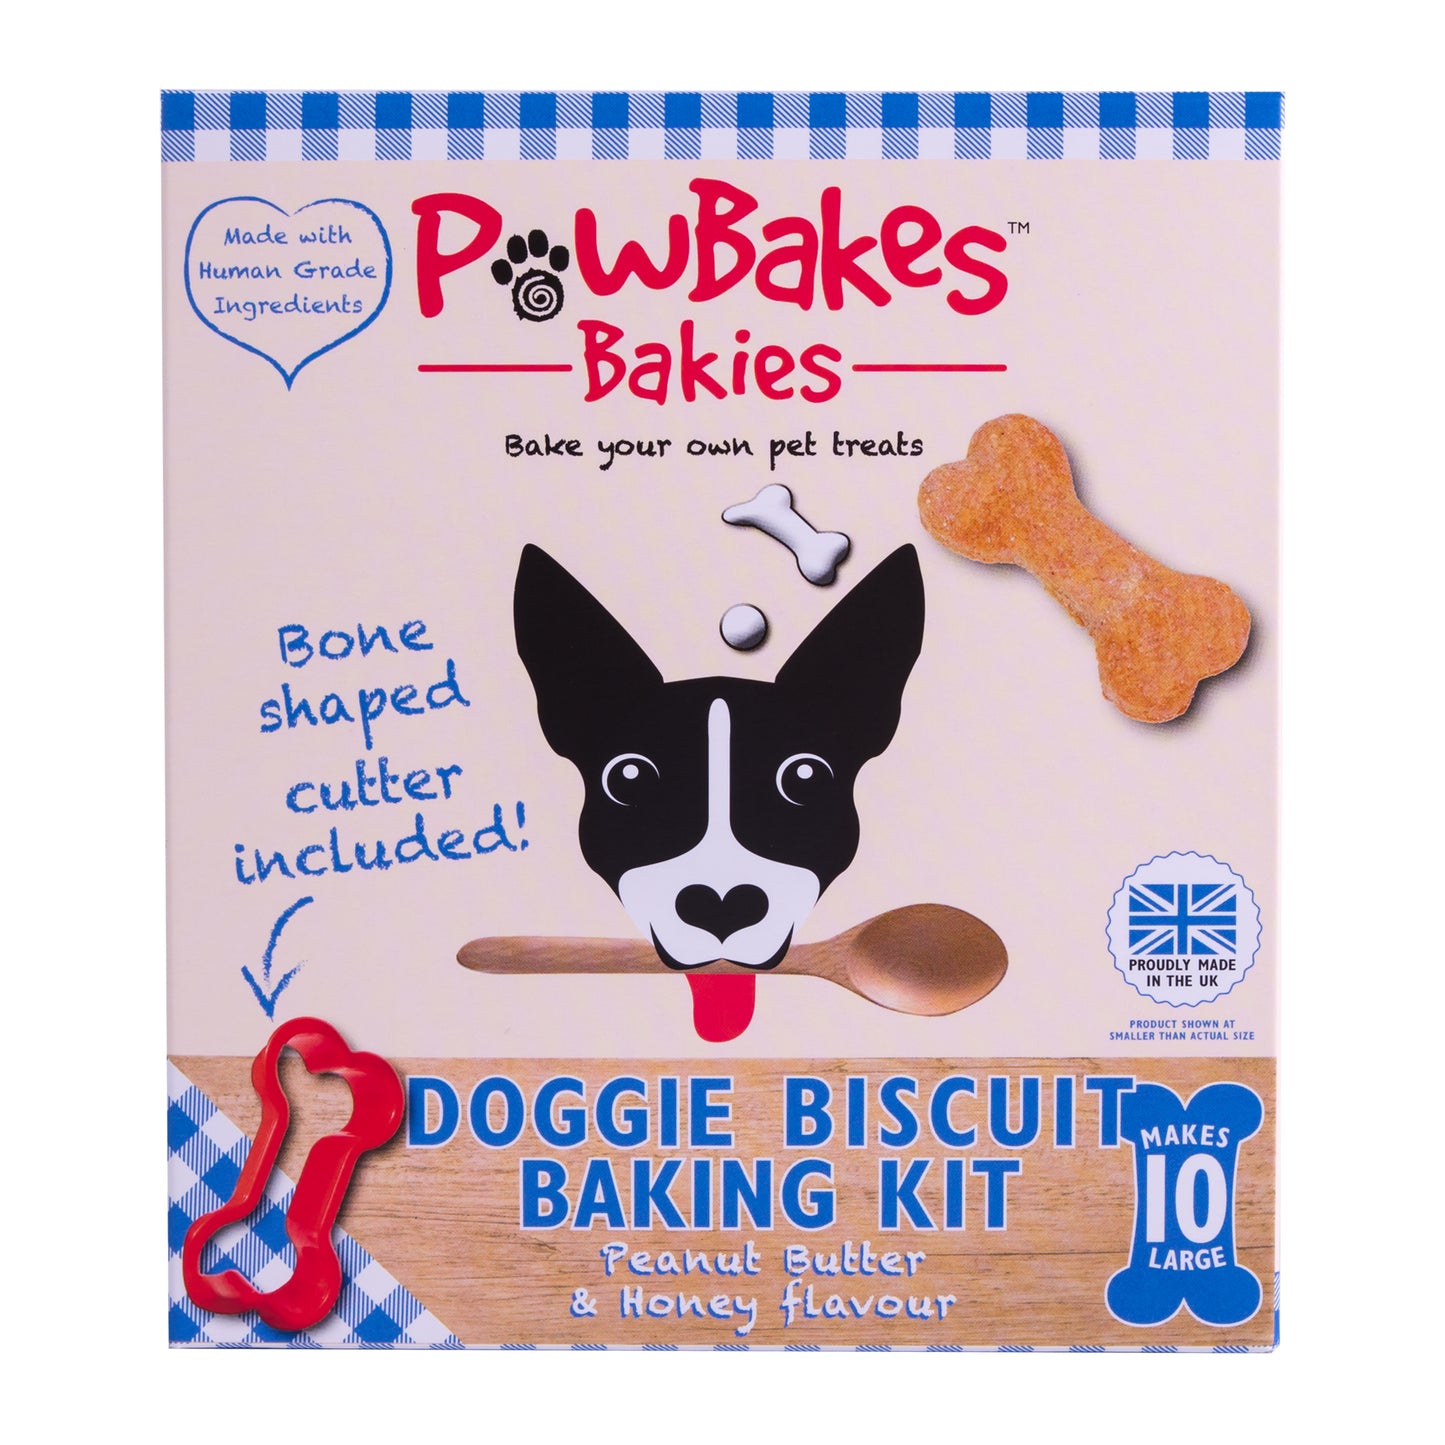 PawBakes Dog Biscuit Baking Kit